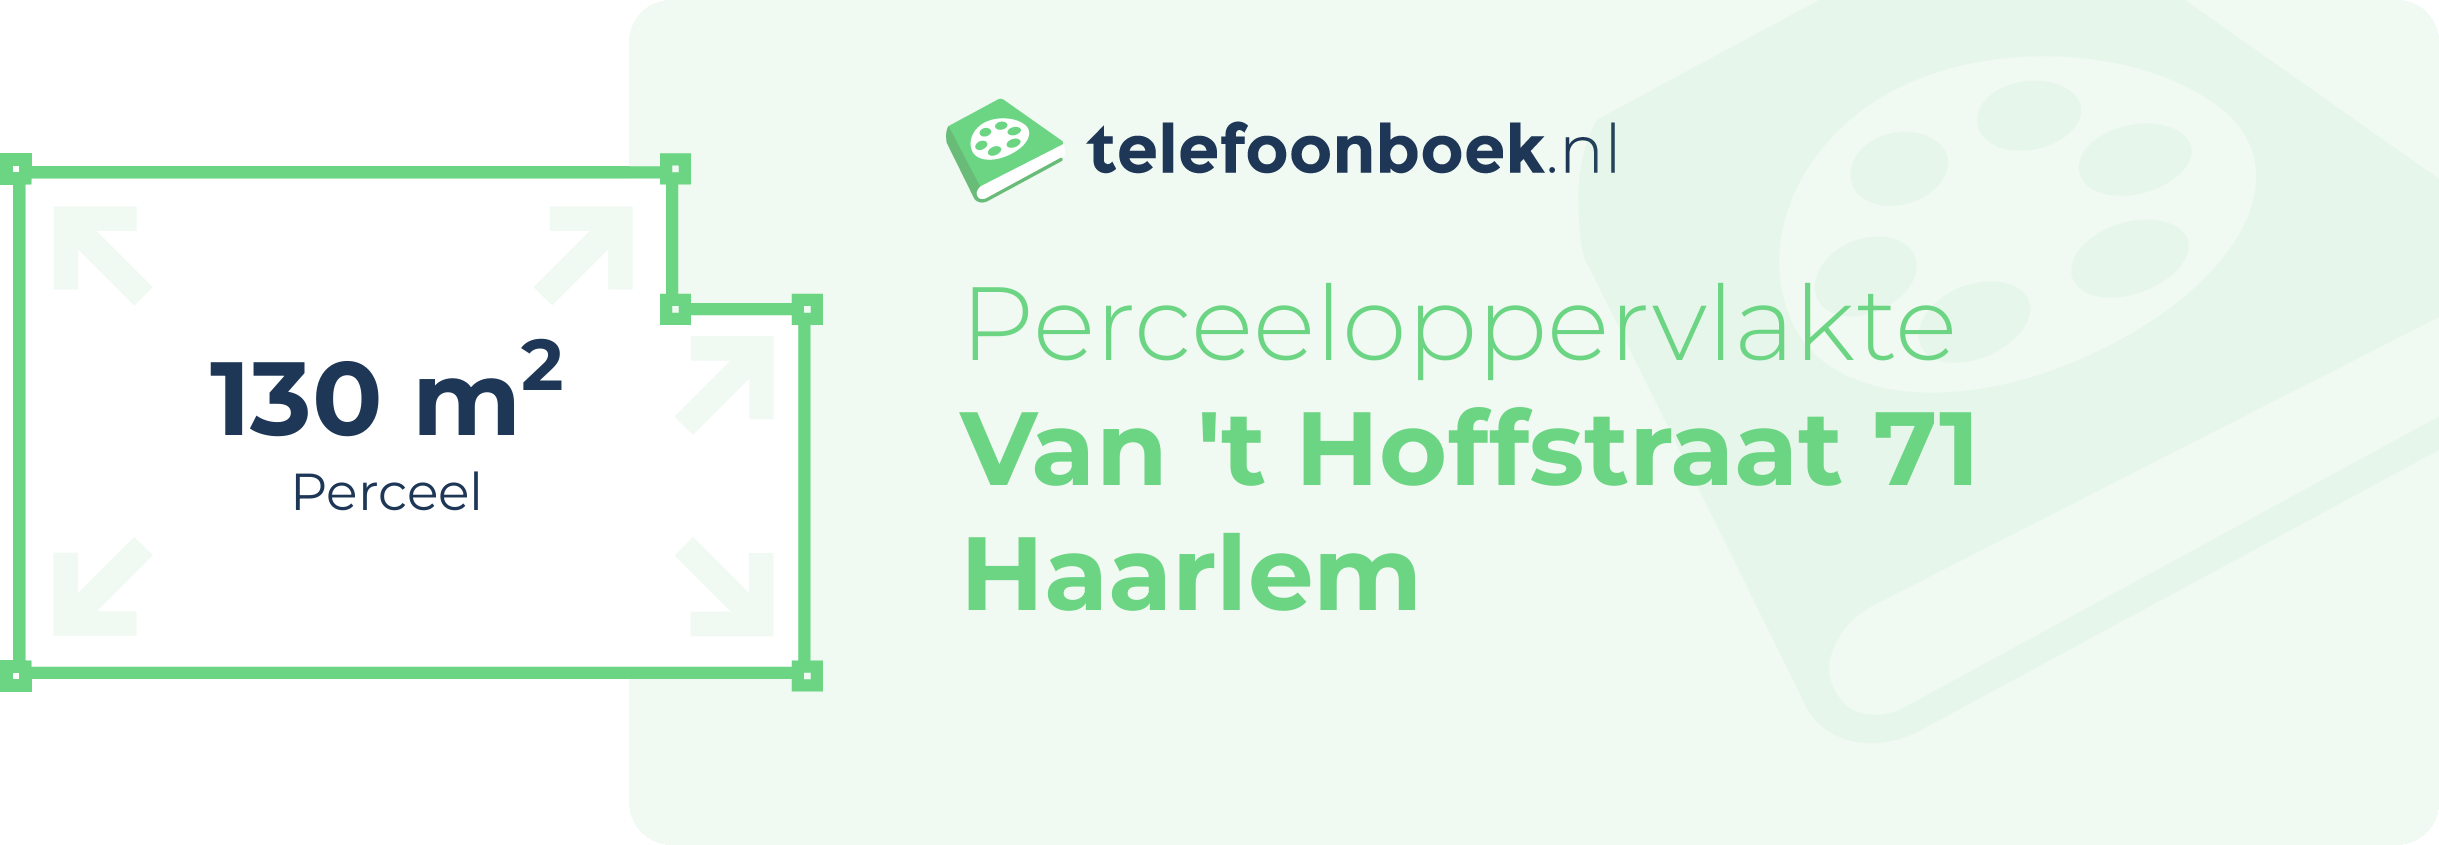 Perceeloppervlakte Van 't Hoffstraat 71 Haarlem